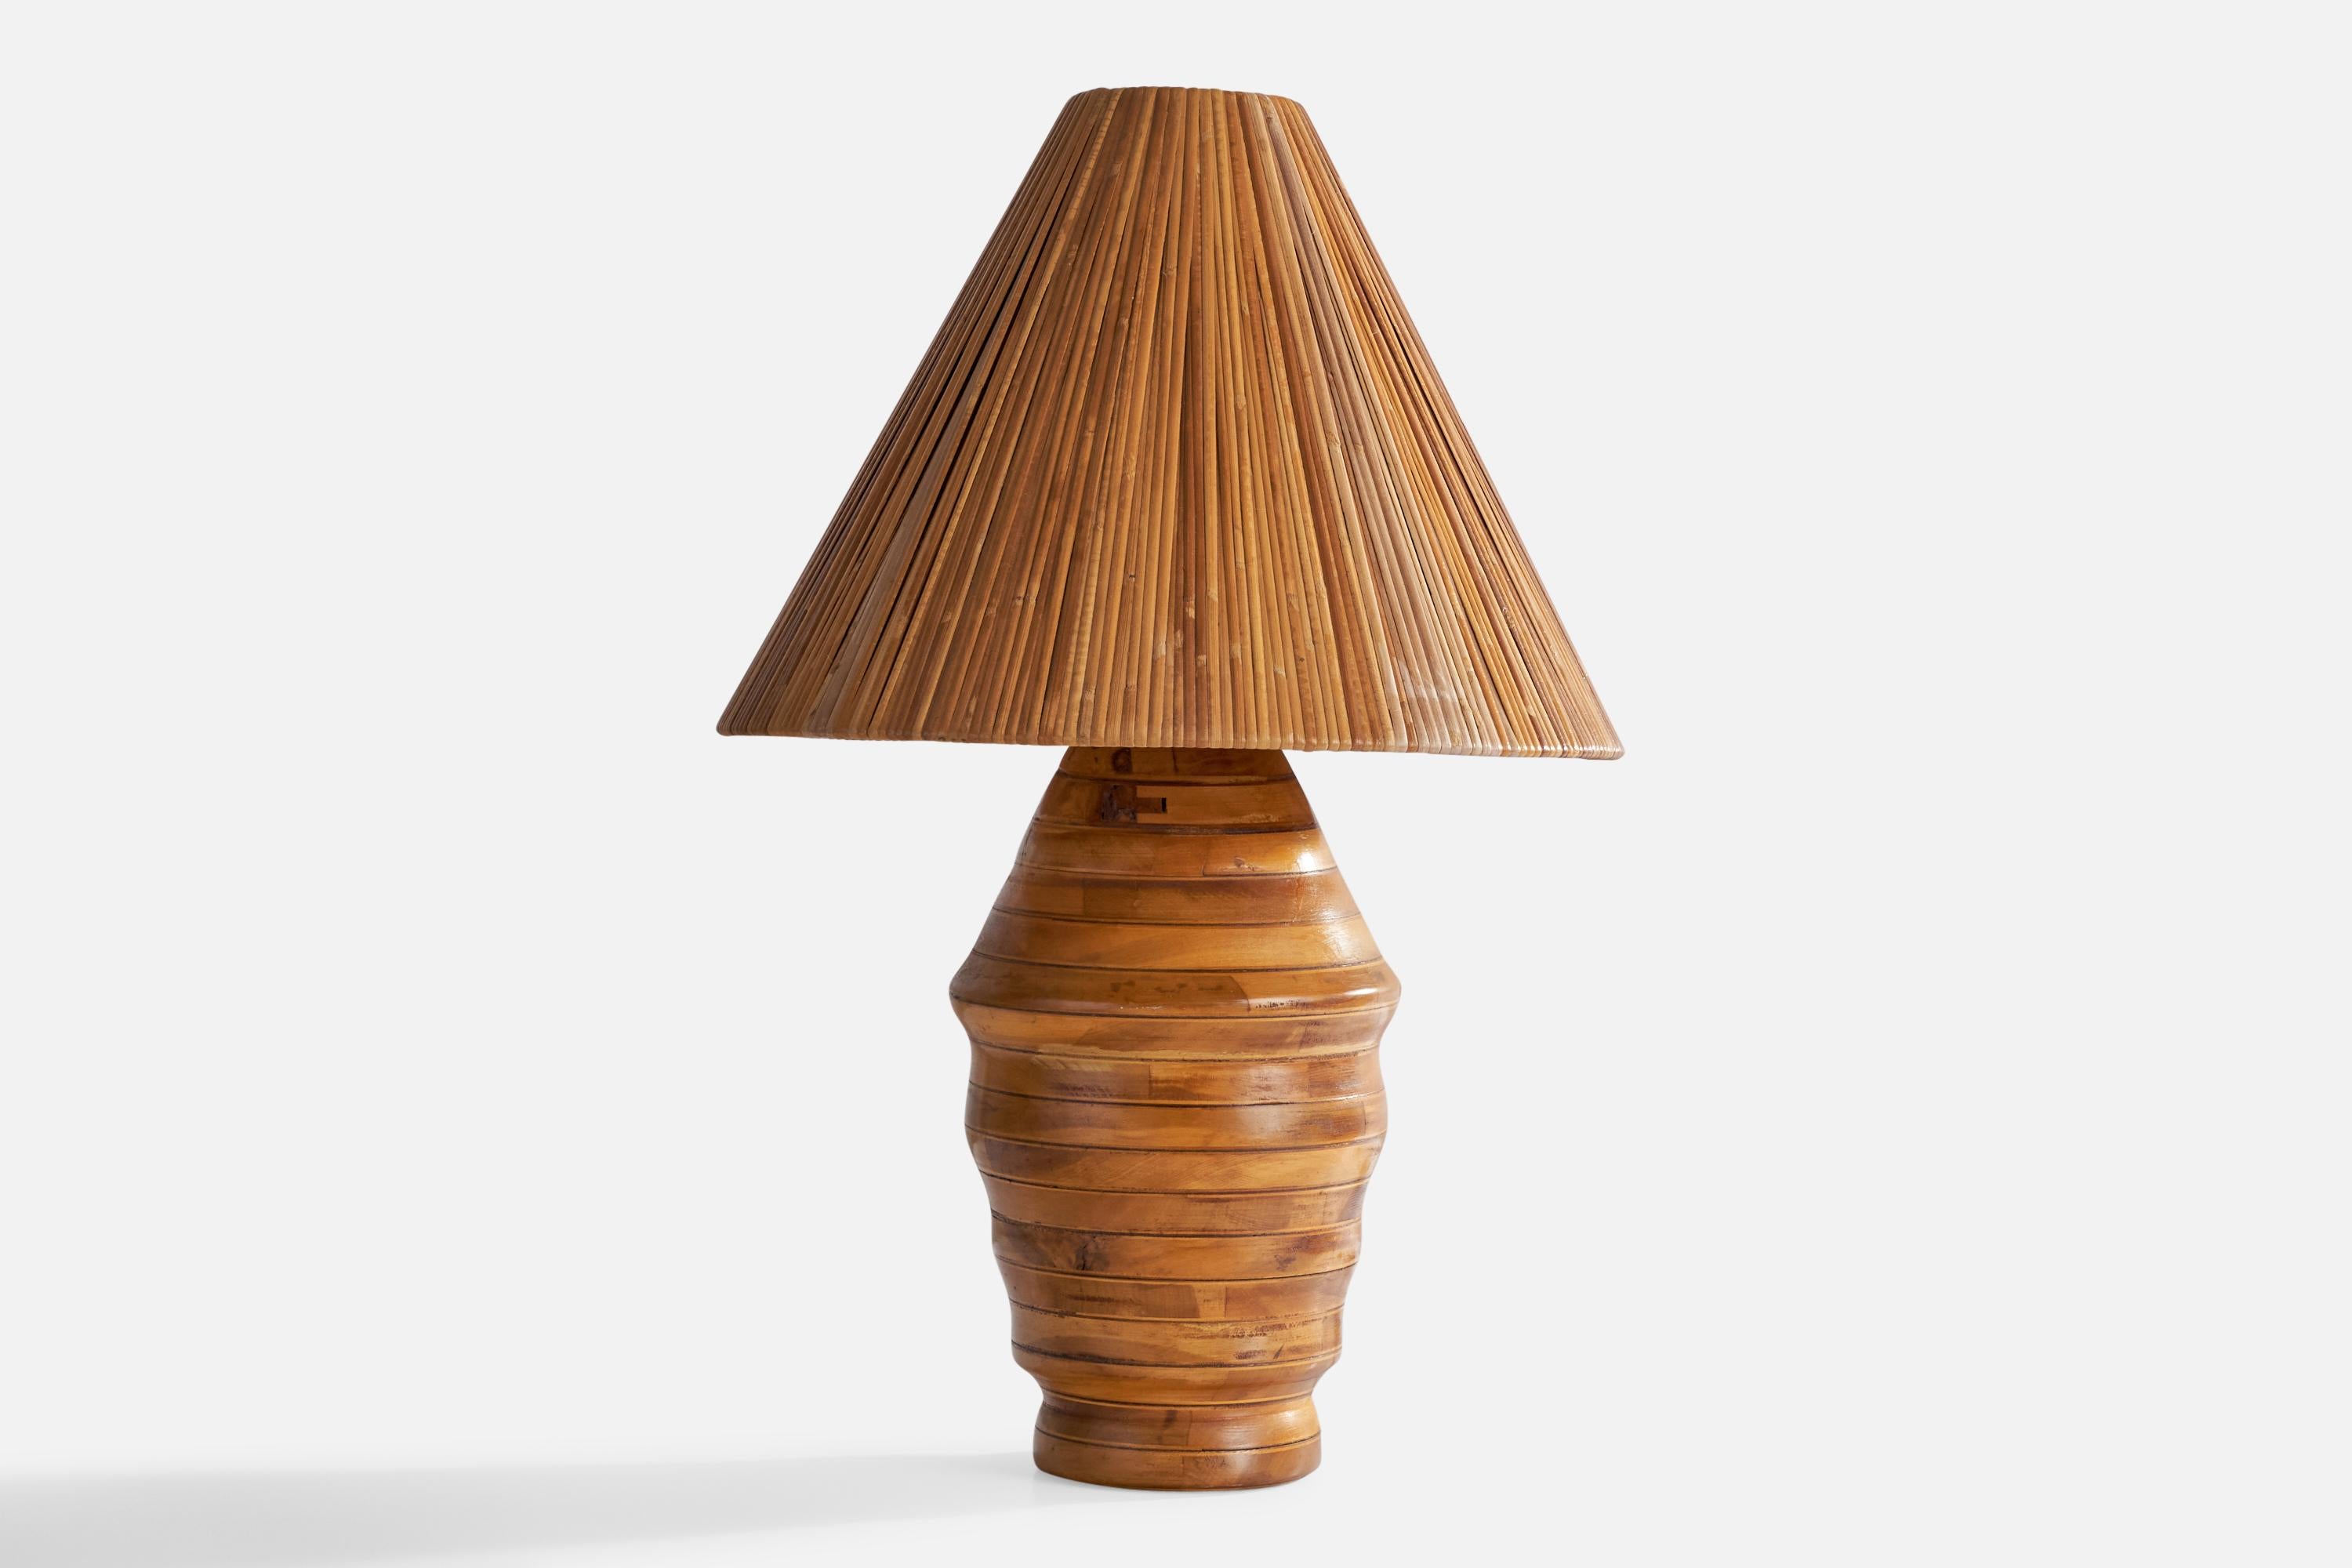 Lampe de table en hickory et rotin, conçue et produite aux États-Unis, années 1950.

Dimensions globales (pouces) : 24.5